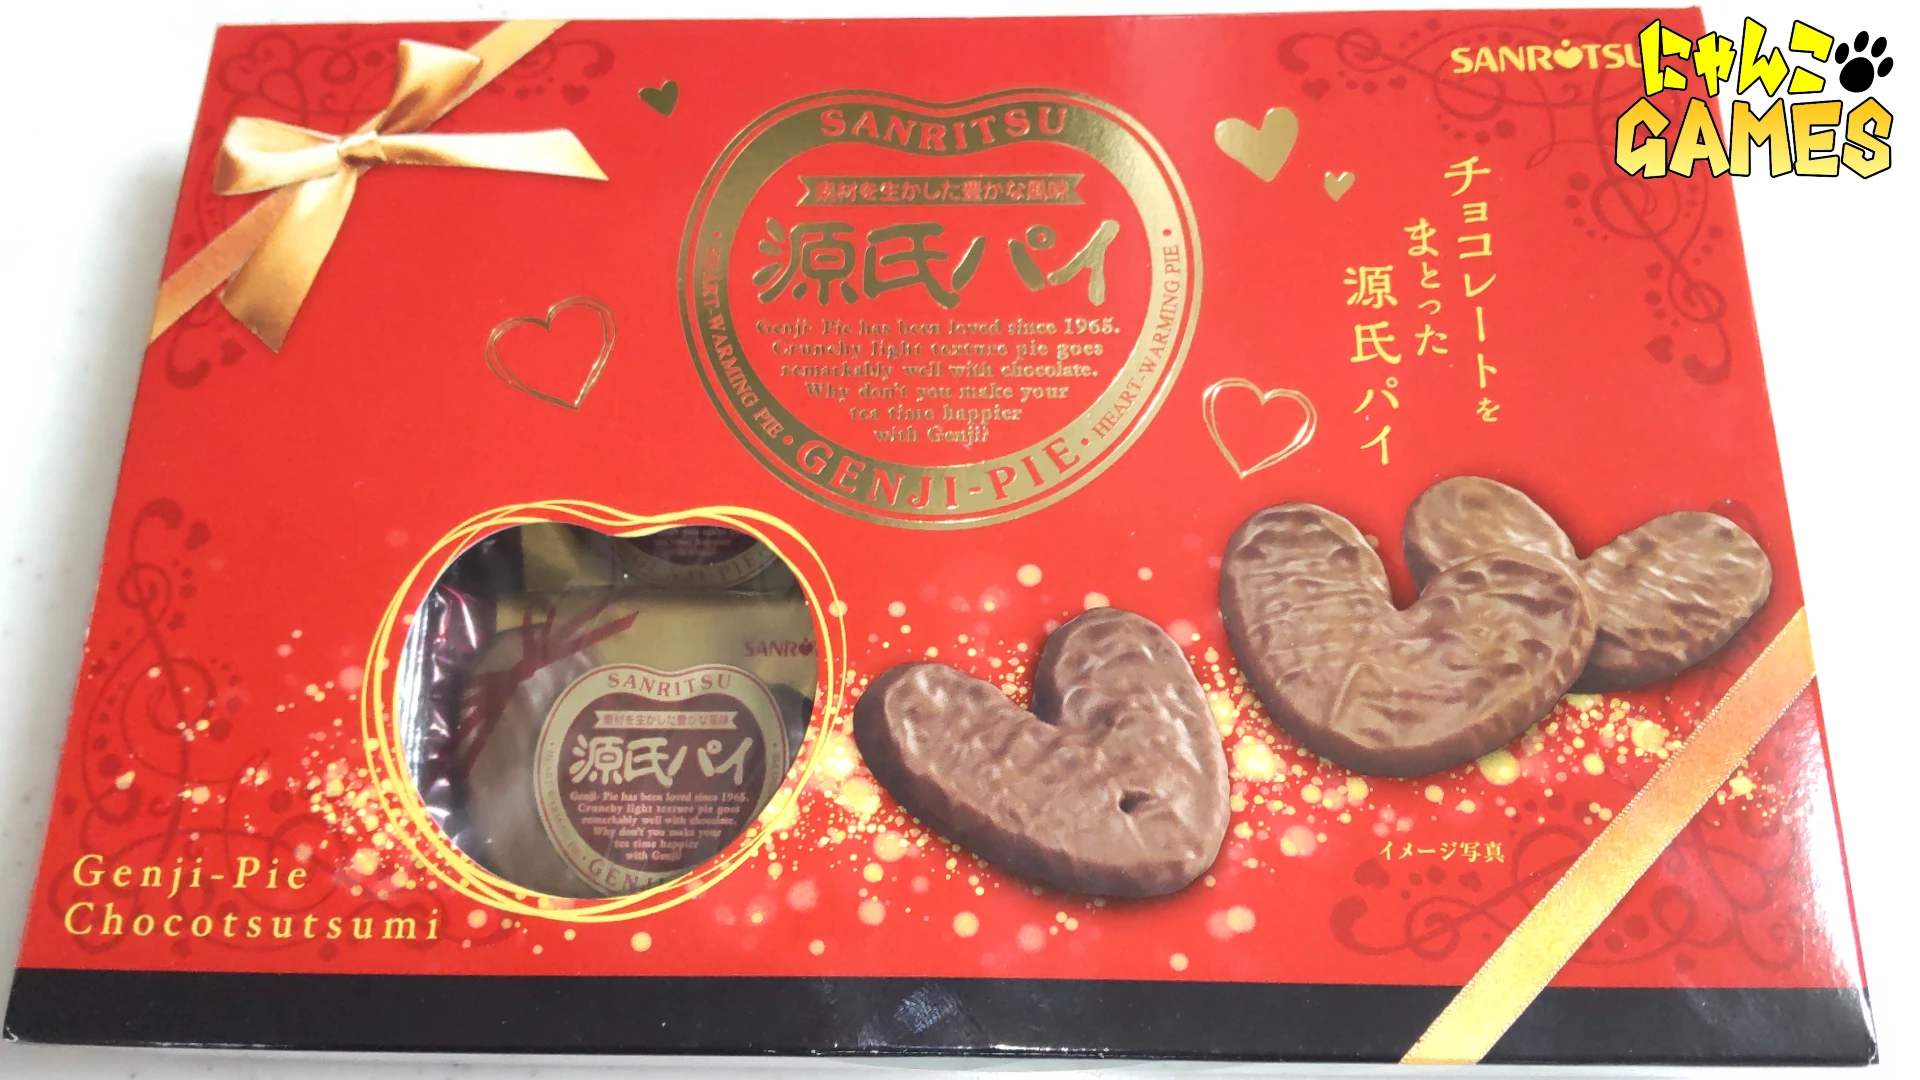 源氏パイチョコ包みバレンタイン BOX のパッケージ